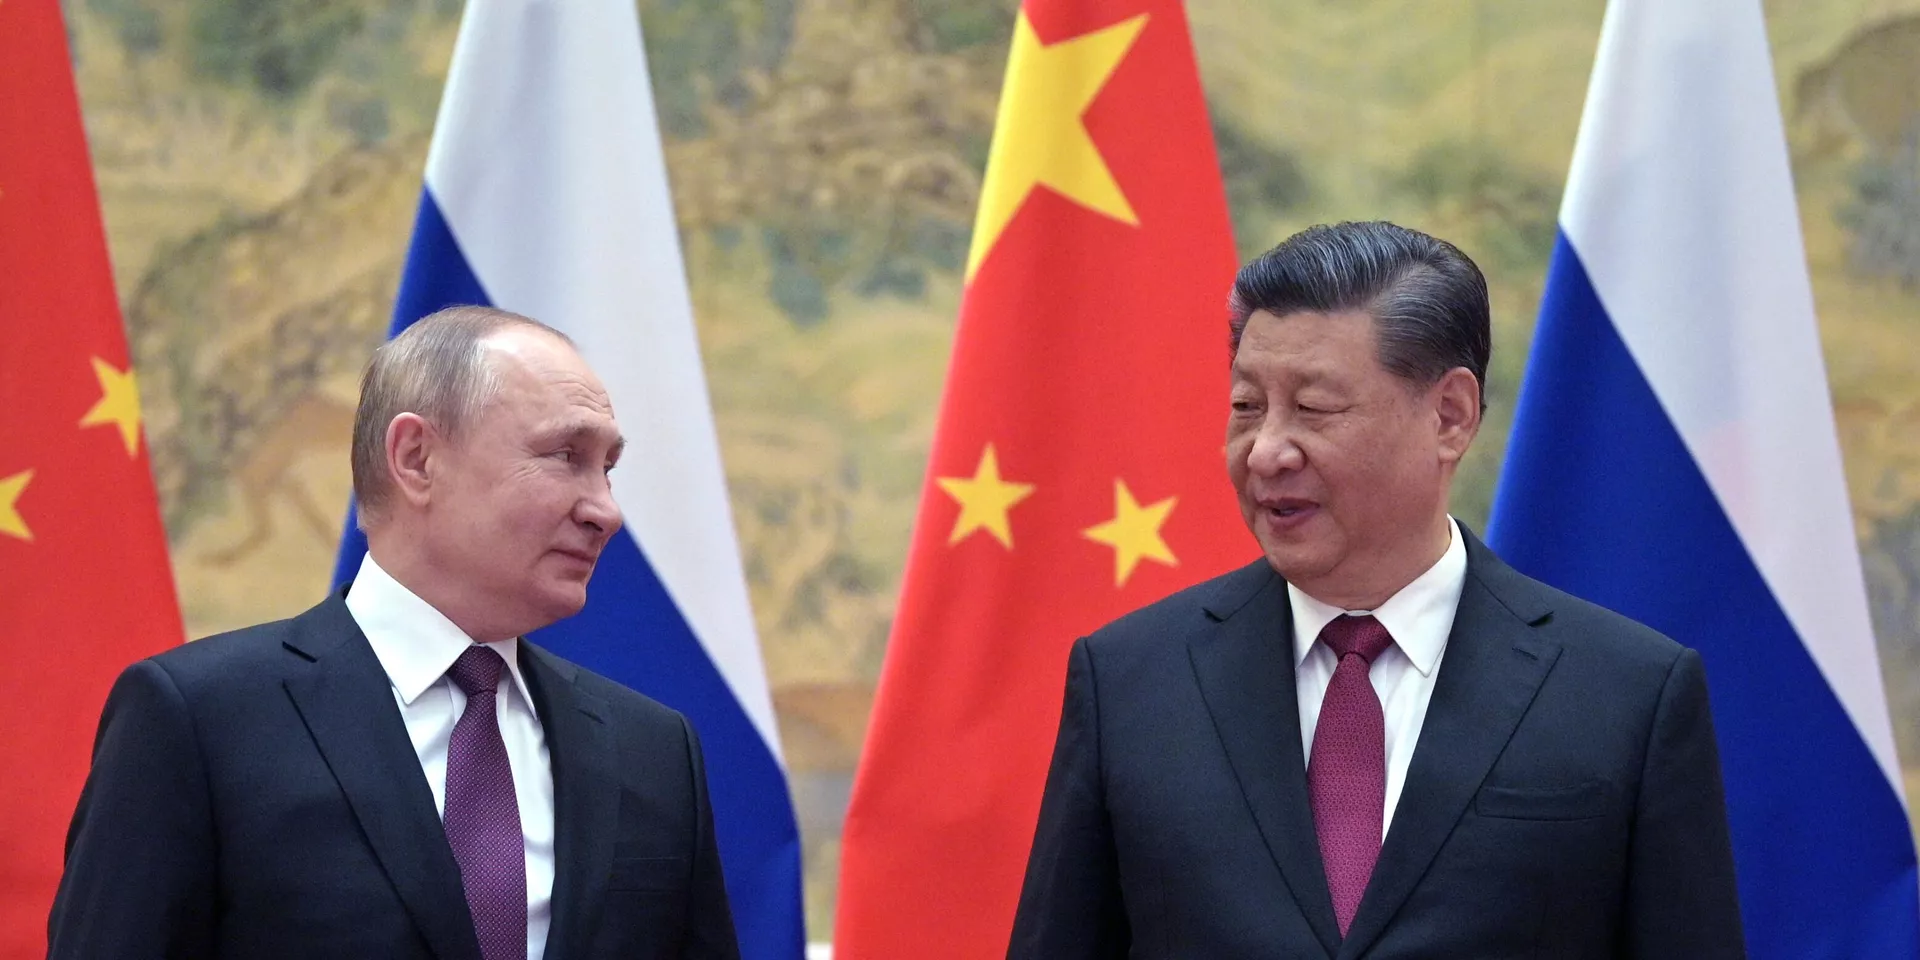 Аналитики считают, что Россия, вероятно, увеличит резервы в юанях на фоне западных санкций￼